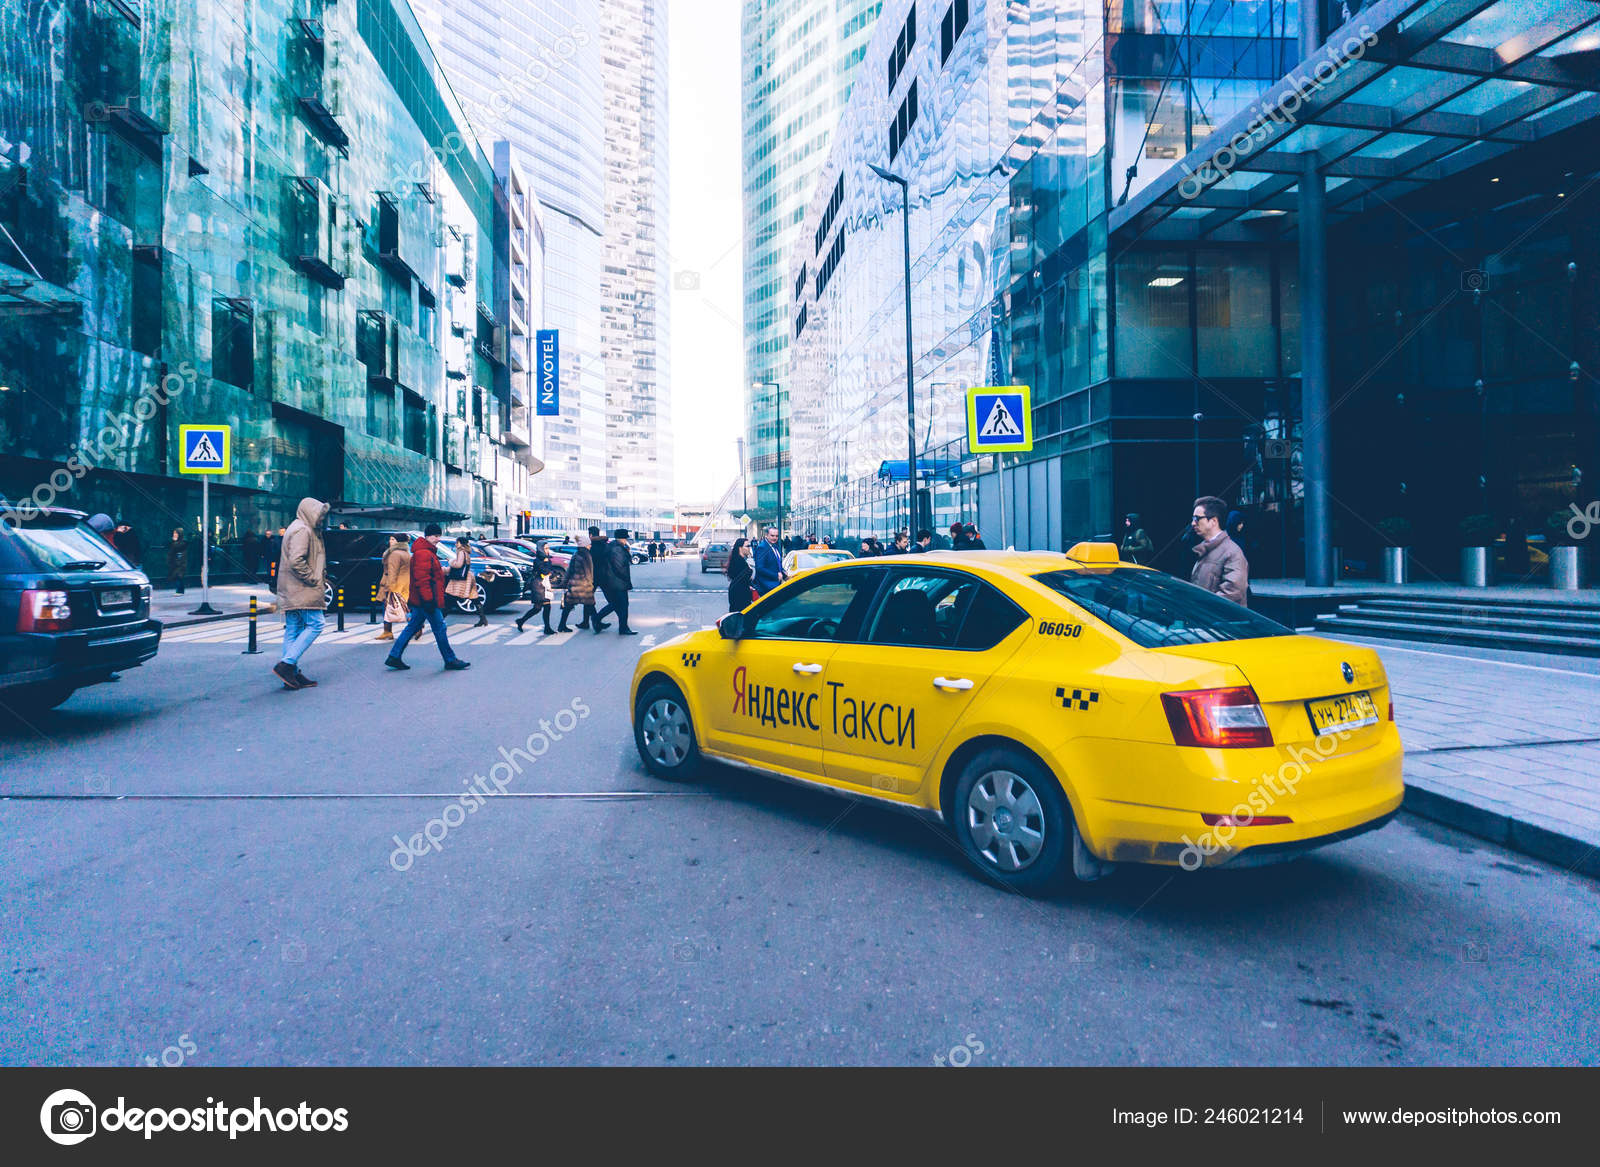 Скачать Фото Яндекс Такси